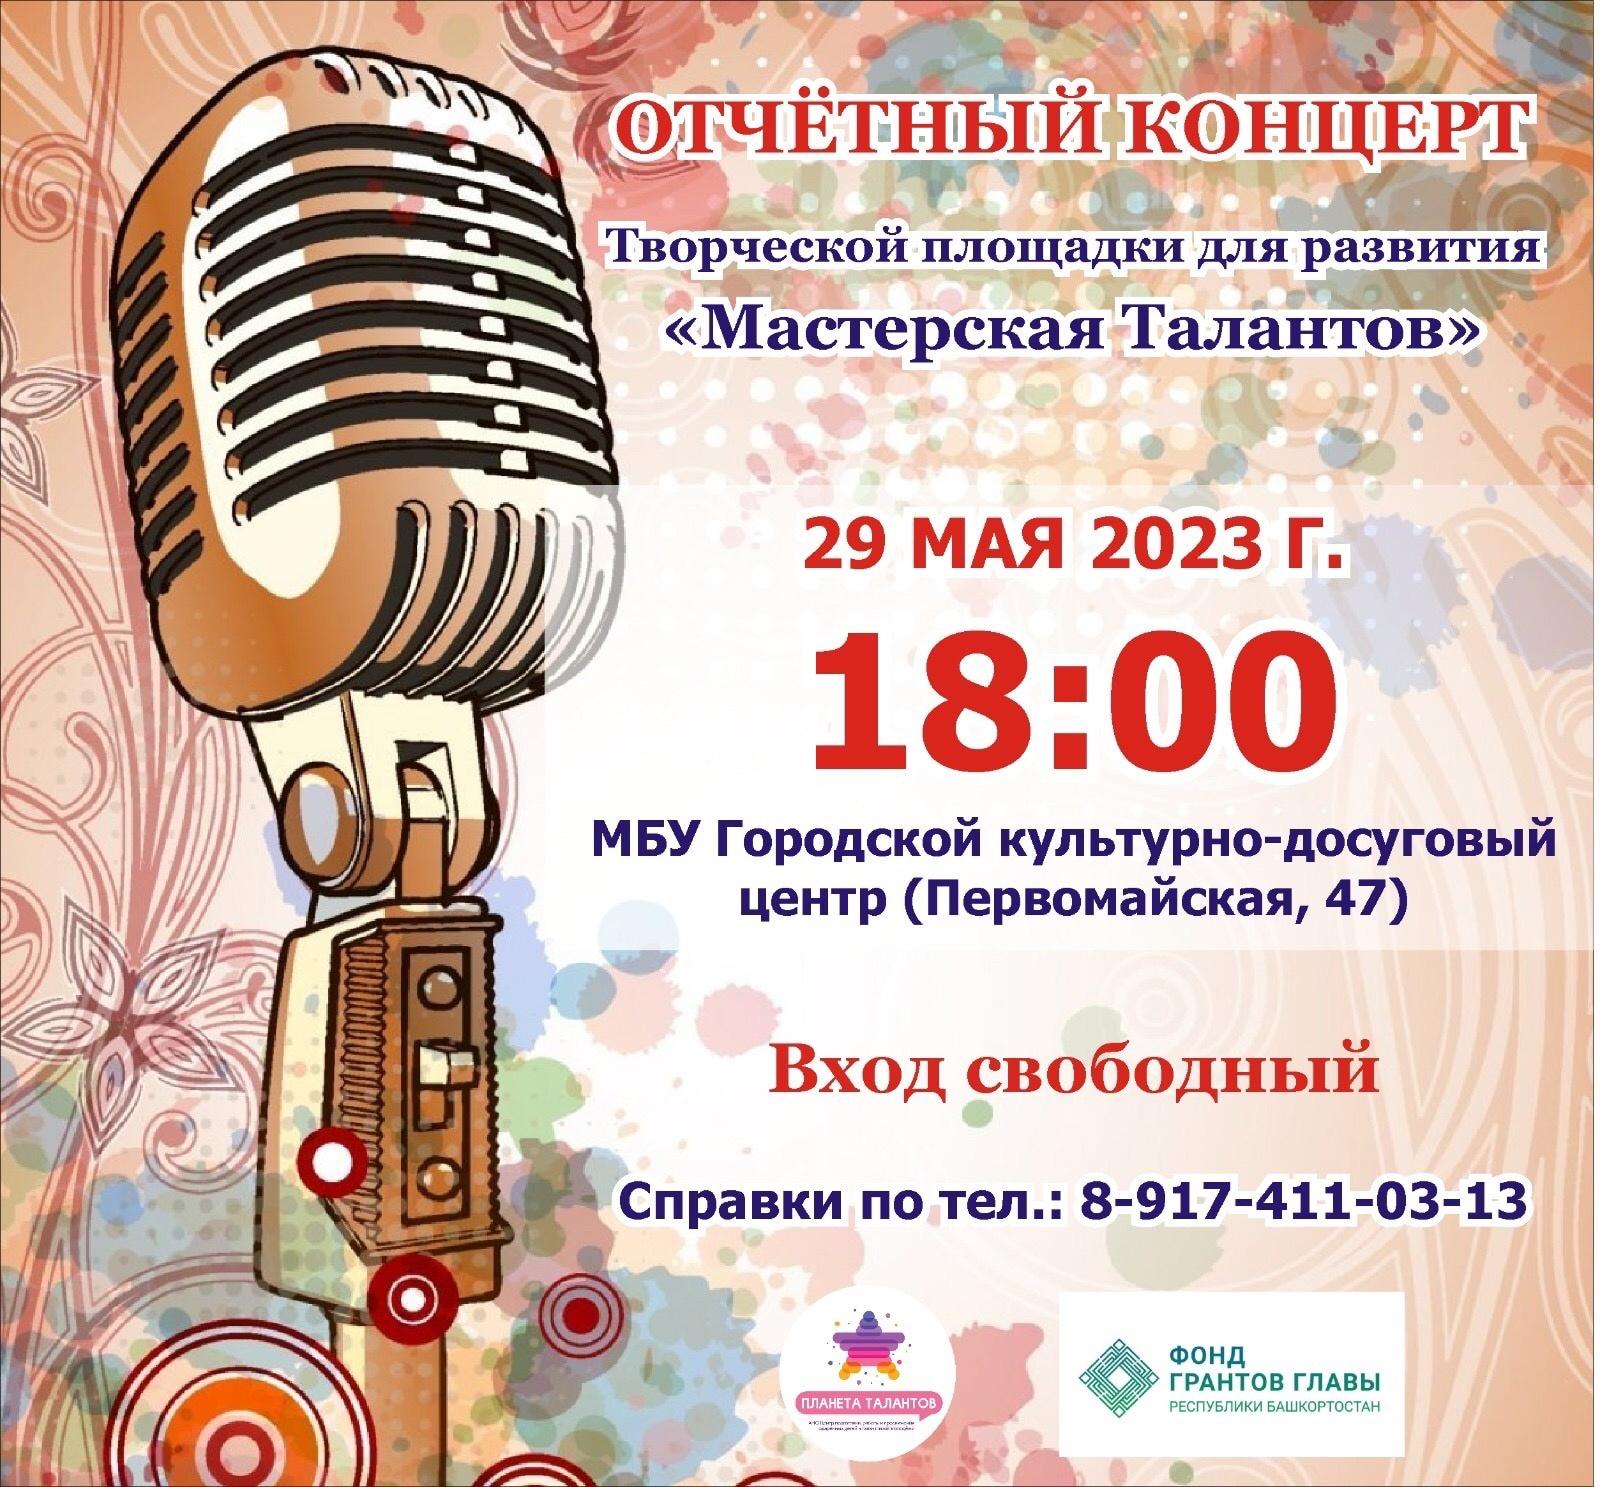 «Мастерская Талантов» приглашает на отчетный концерт грантового проекта